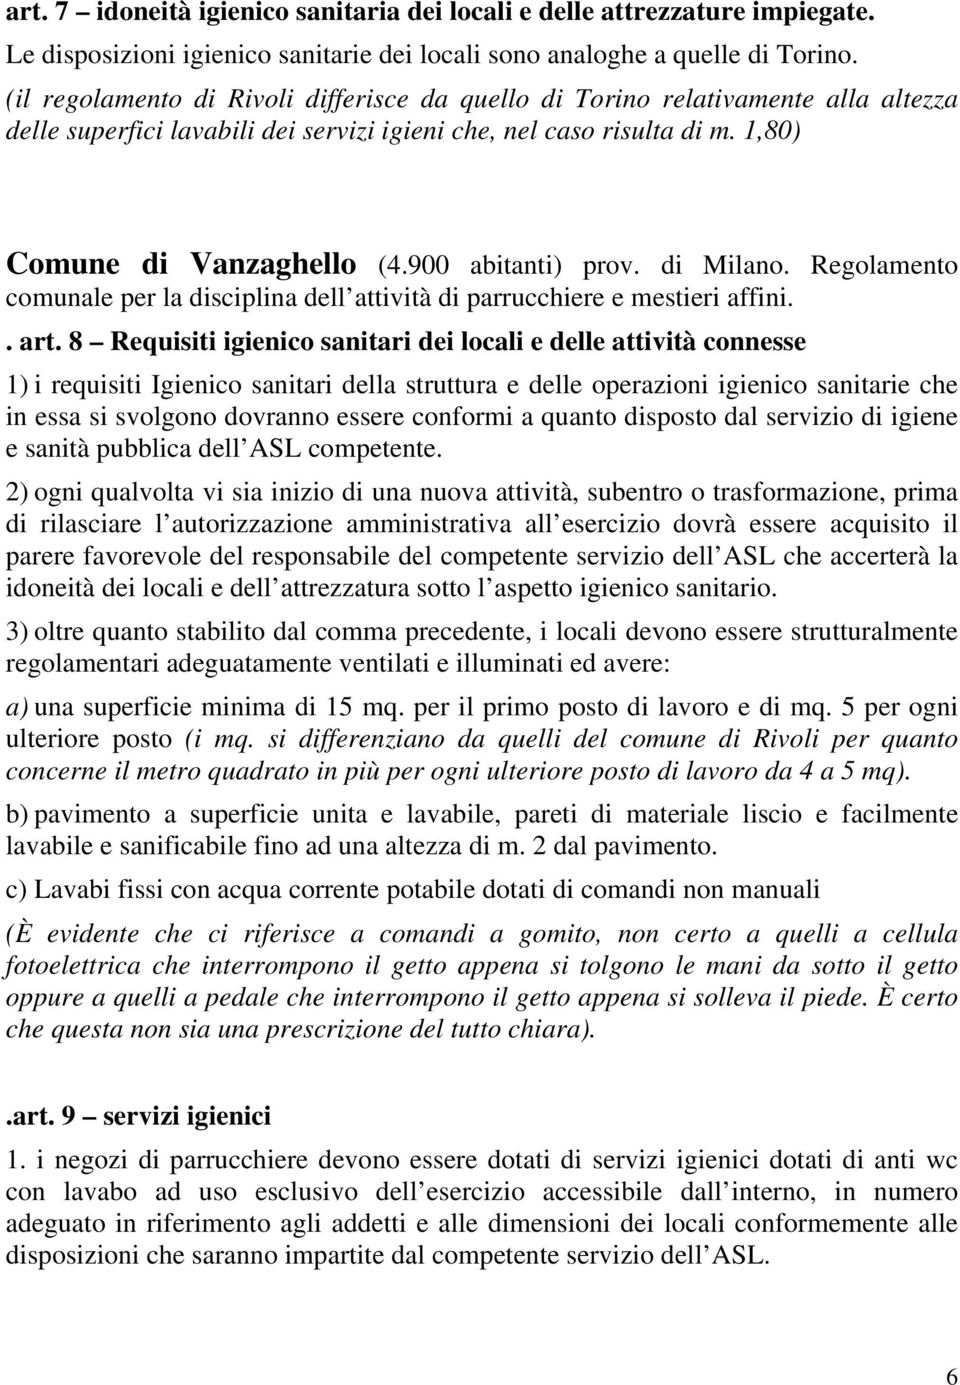 900 abitanti) prov. di Milano. Regolamento comunale per la disciplina dell attività di parrucchiere e mestieri affini.. art.